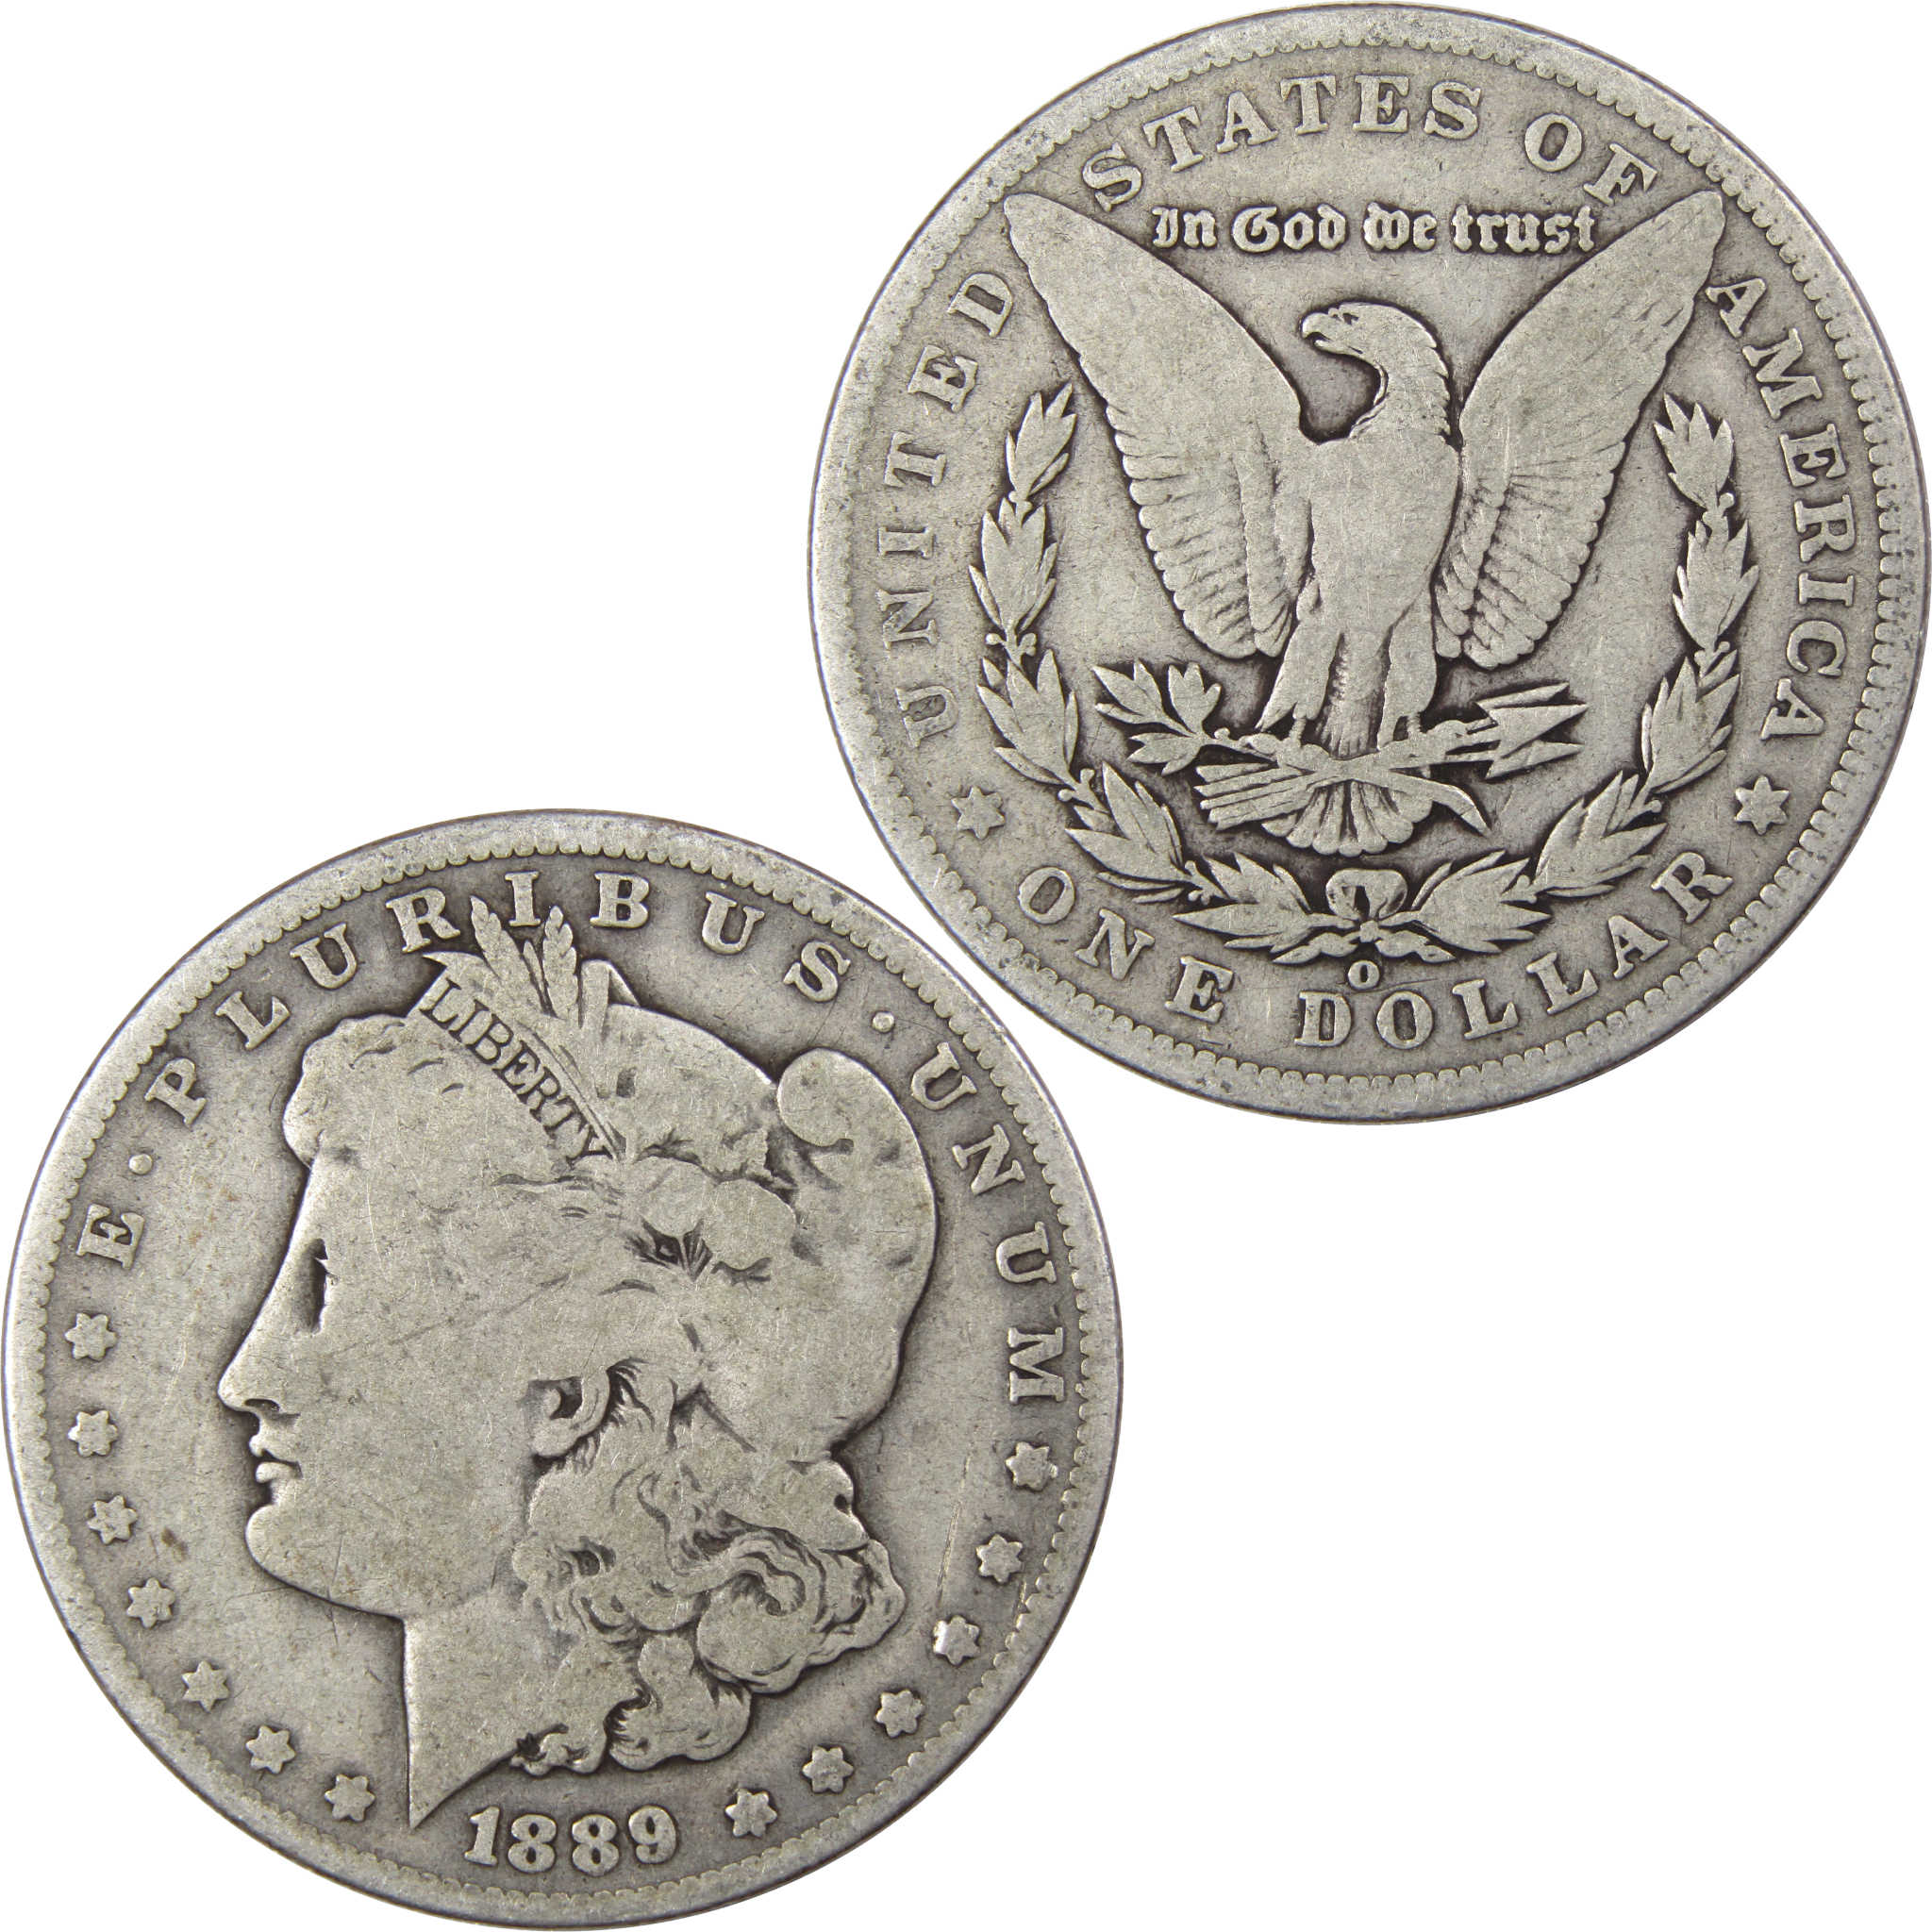 1889 O Morgan Dollar VG Very Good 90% Silver US Coin SKU:I1859 - Morgan coin - Morgan silver dollar - Morgan silver dollar for sale - Profile Coins &amp; Collectibles